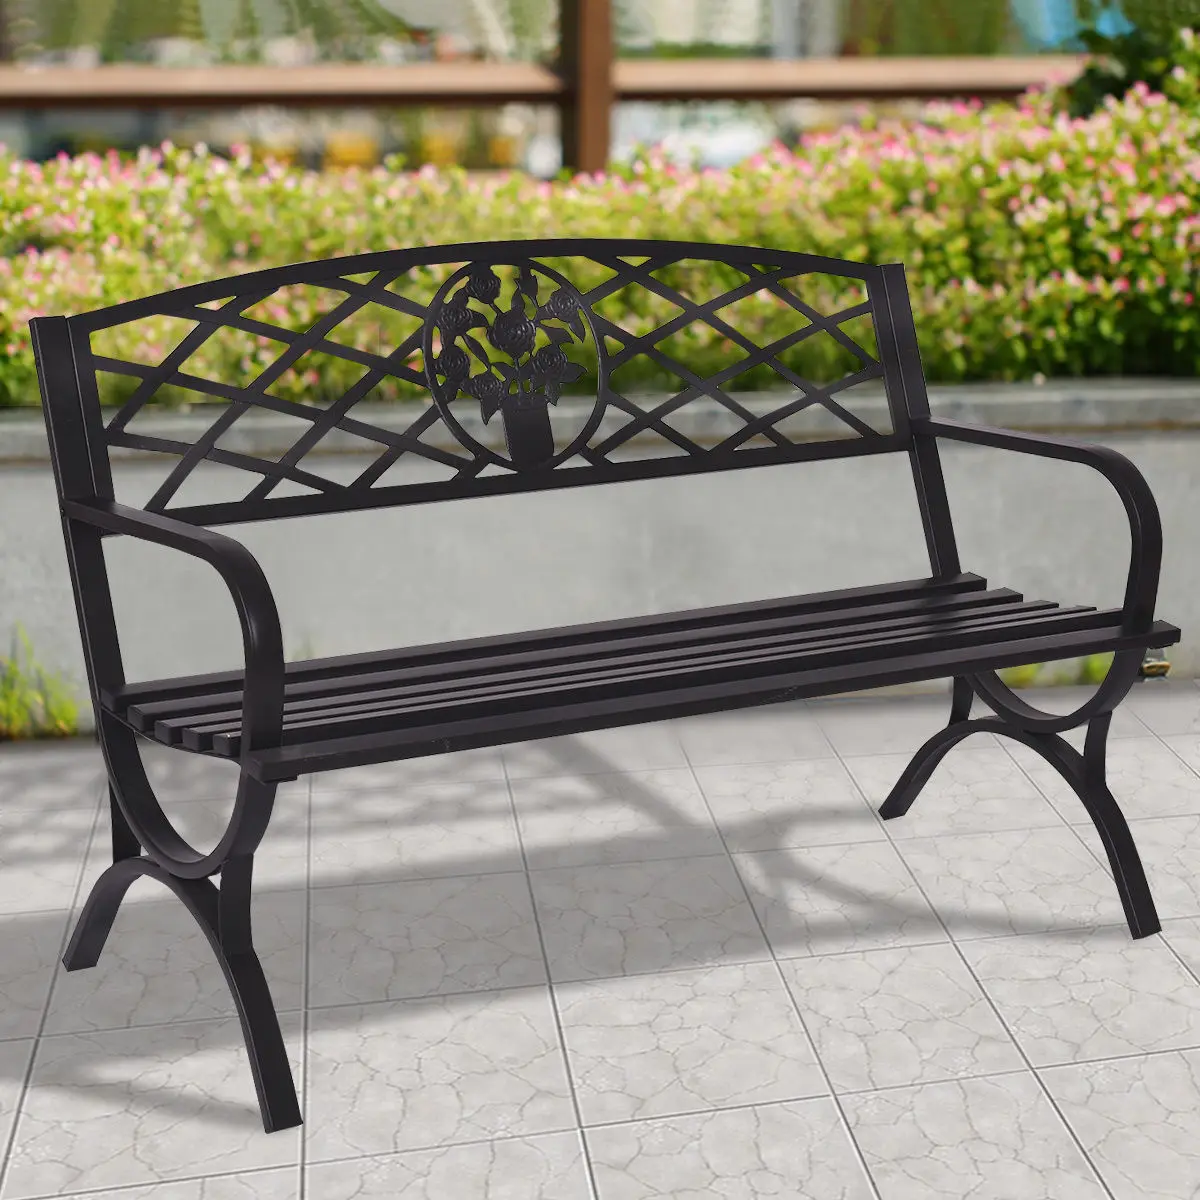 Giantex 50 "патио садовая скамейка металлический черный Парк двор уличная мебель прочная стальная рама стул для веранды сиденье OP3139